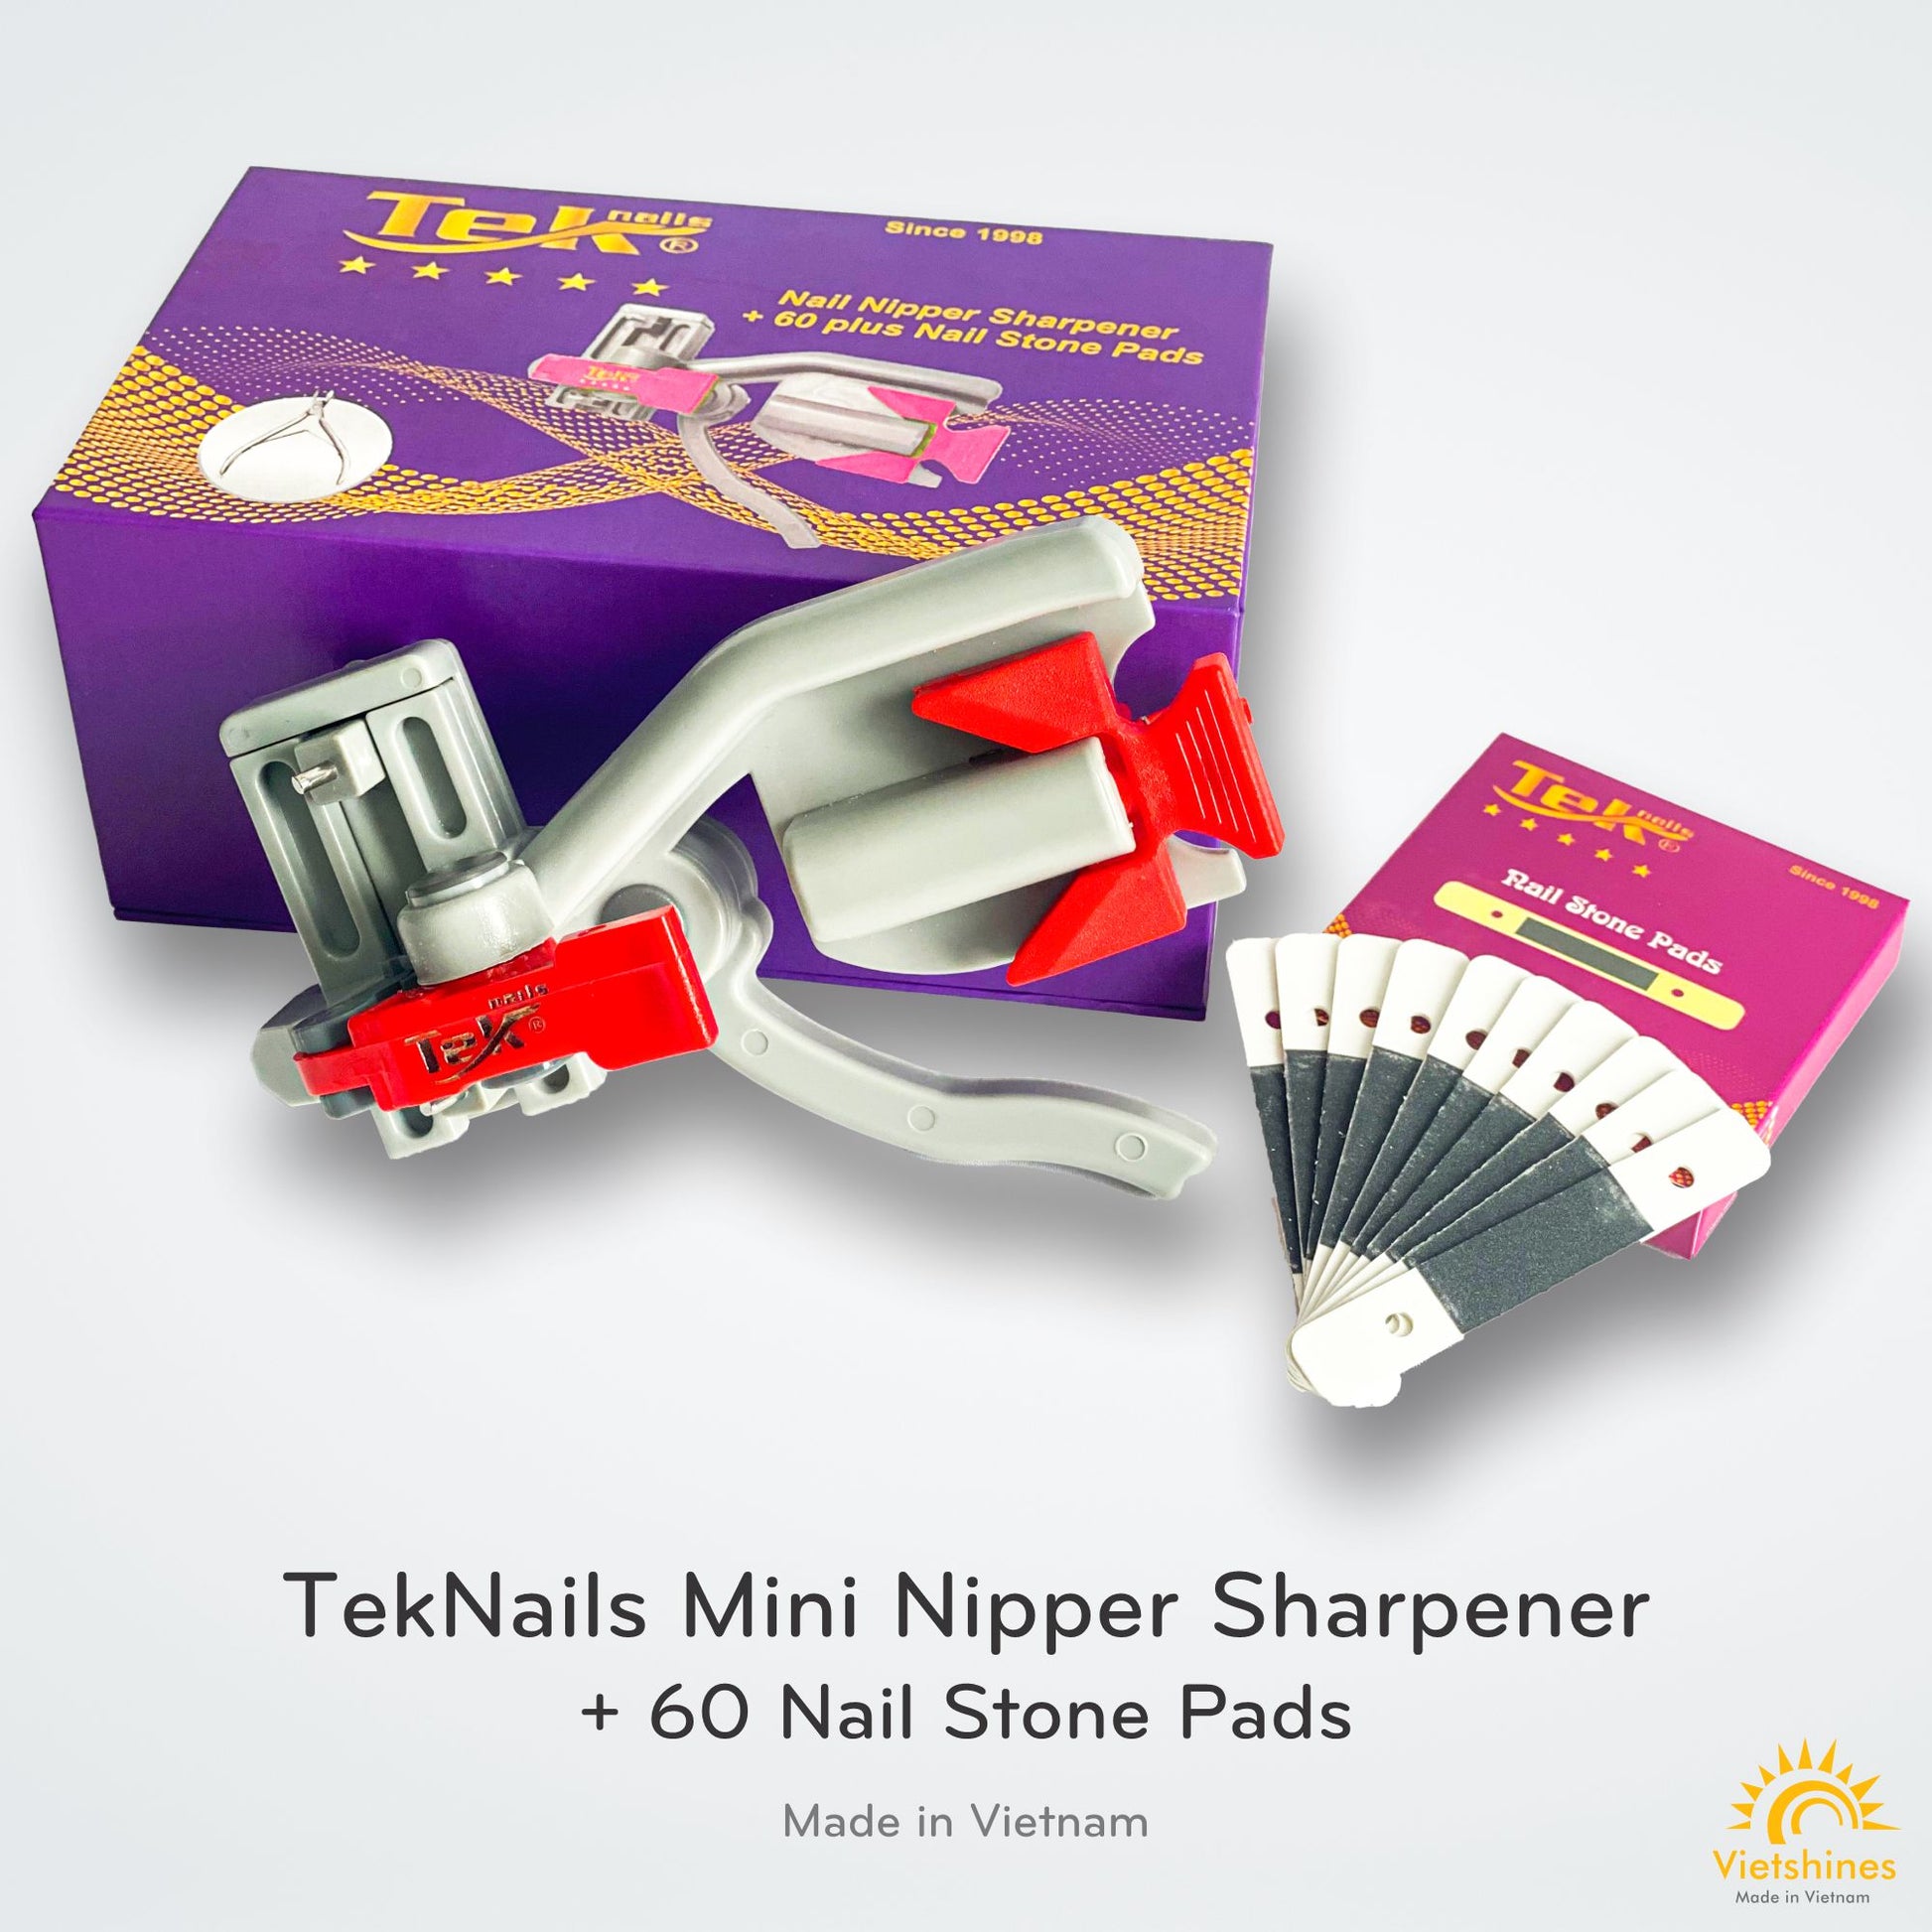 TekNails mini nipper sharpener là công cụ tuyệt vời để sửa chữa khuôn mẫu móng của bạn. Công nghệ tiên tiến và hiệu quả giúp bạn sửa chữa khuôn mẫu móng của bạn nhanh chóng và dễ dàng nhất. Là một sản phẩm cần thiết cho bất kỳ salon nào.